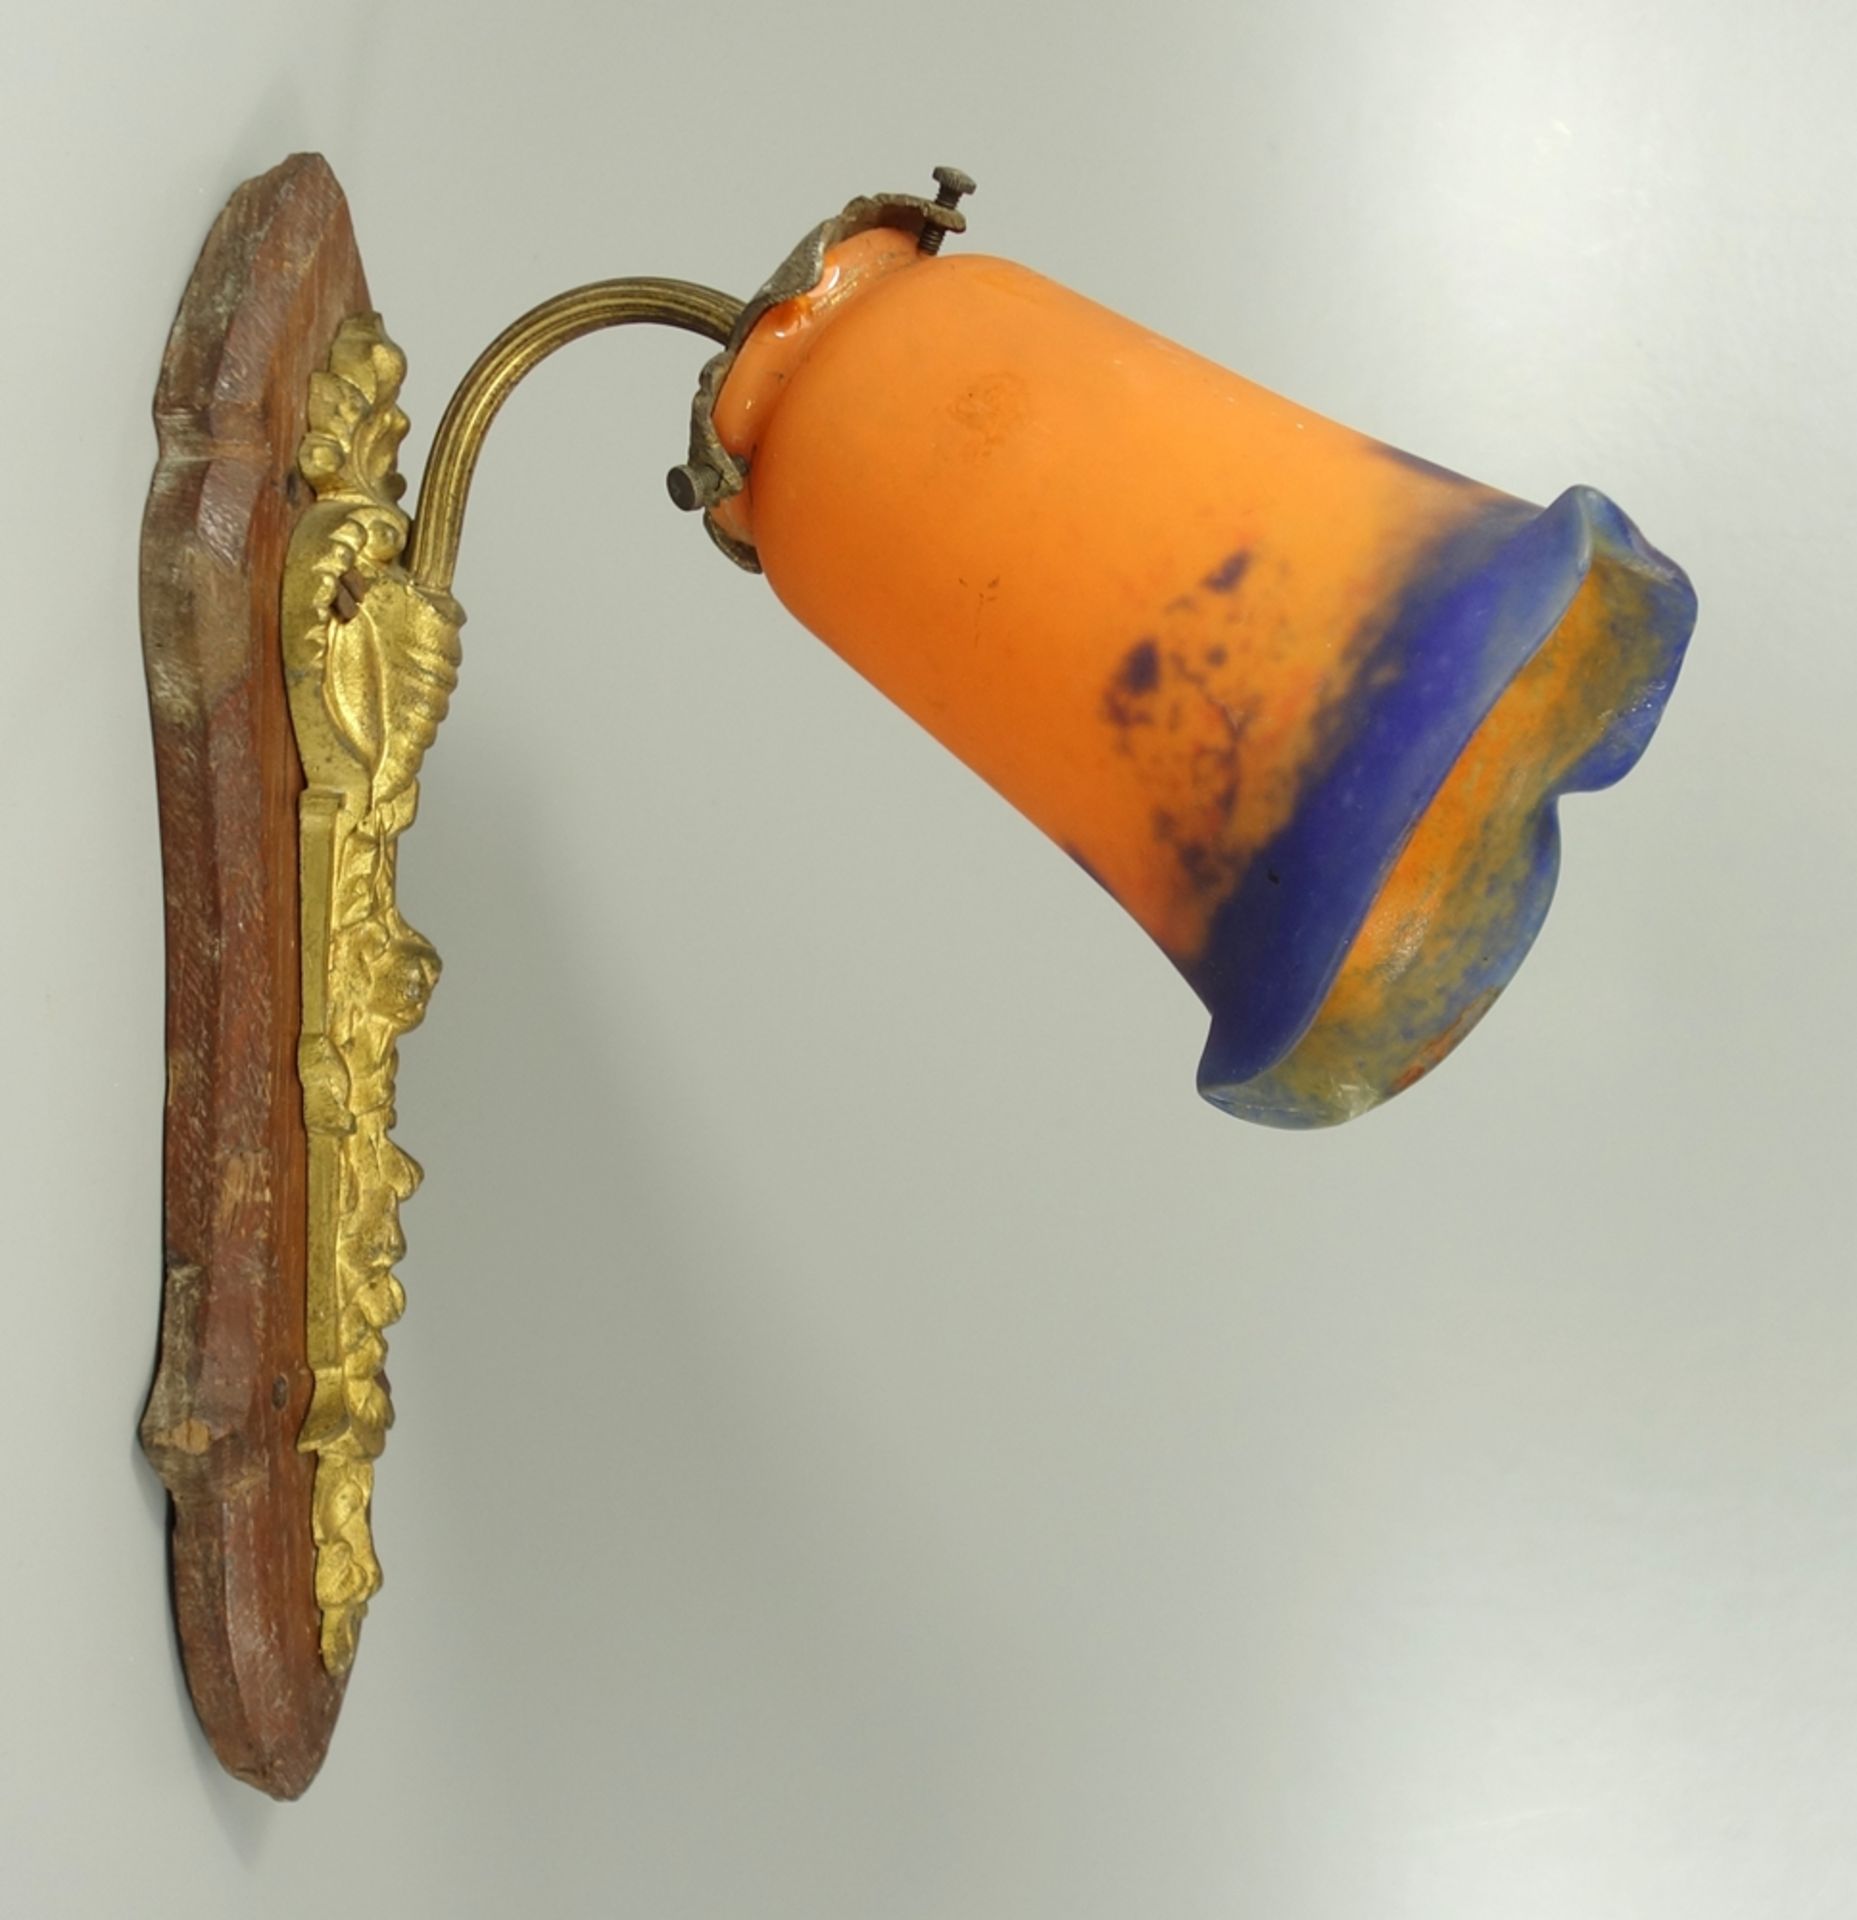 Jugendstil- Wandlampe, Noverdy France, um 1910, Pate-de-verre-Lampenschirm in Orange und Blau,